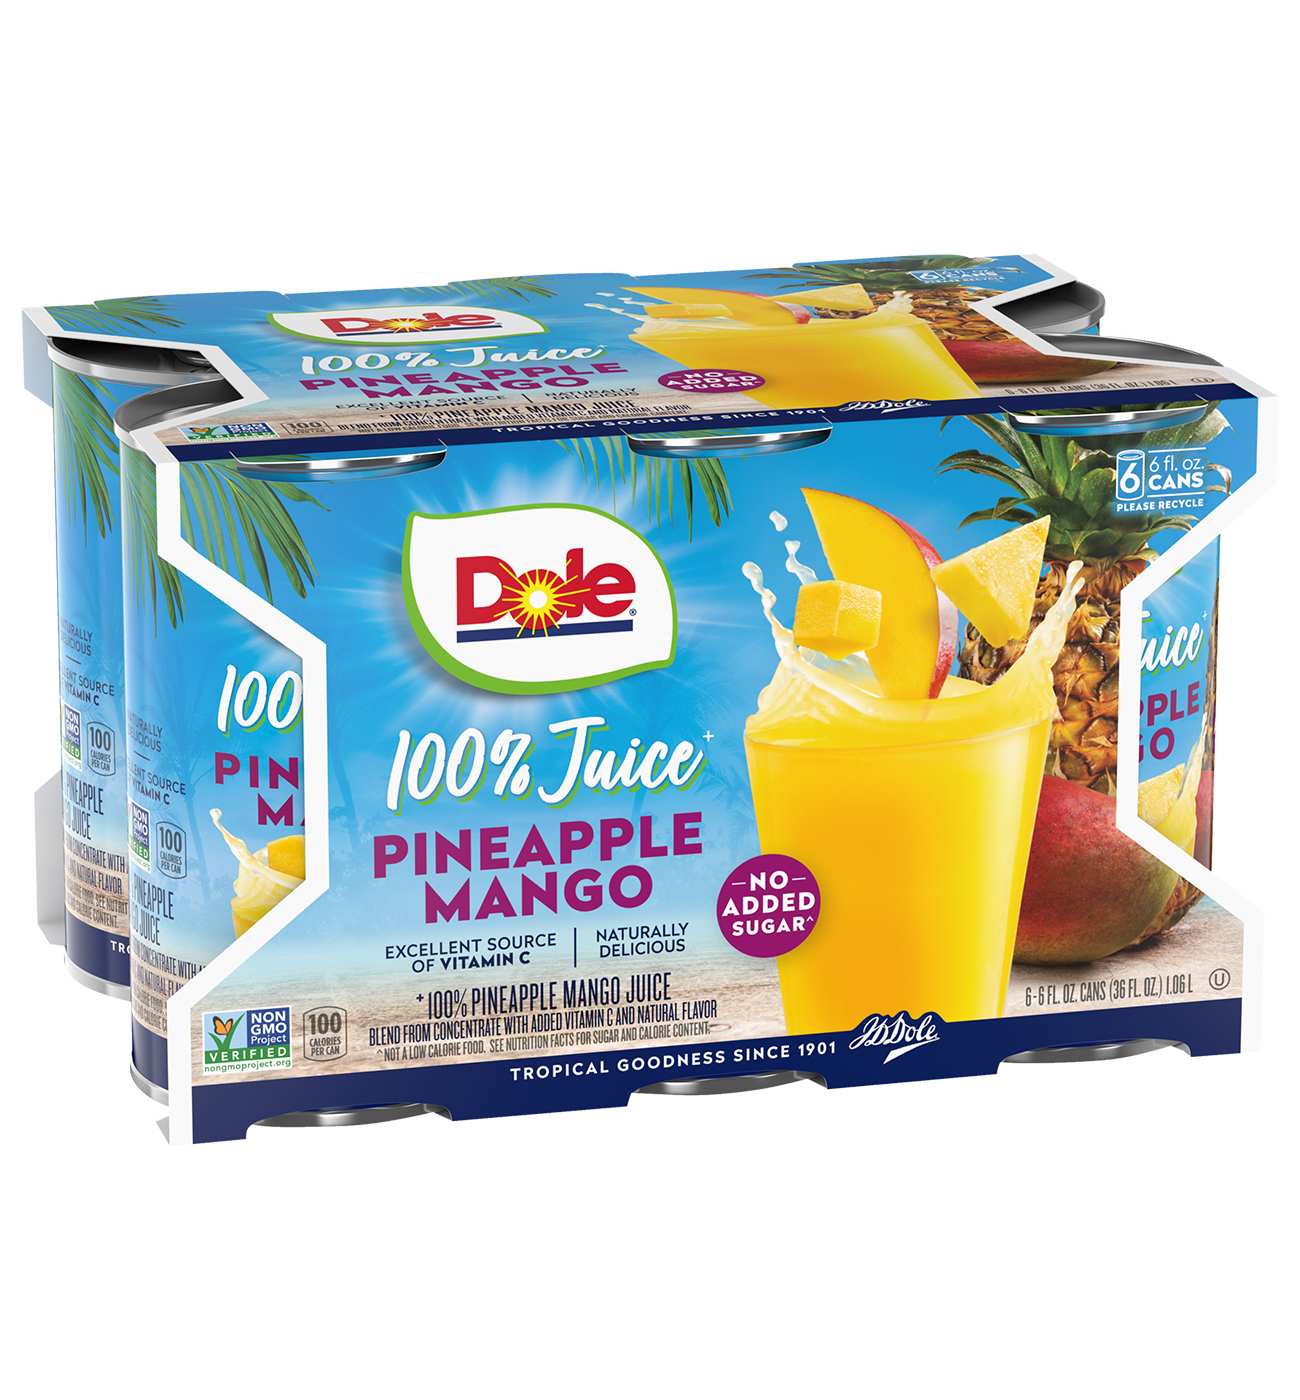 Dole Pineapple Mango Juice 6 oz Cans; image 2 of 2